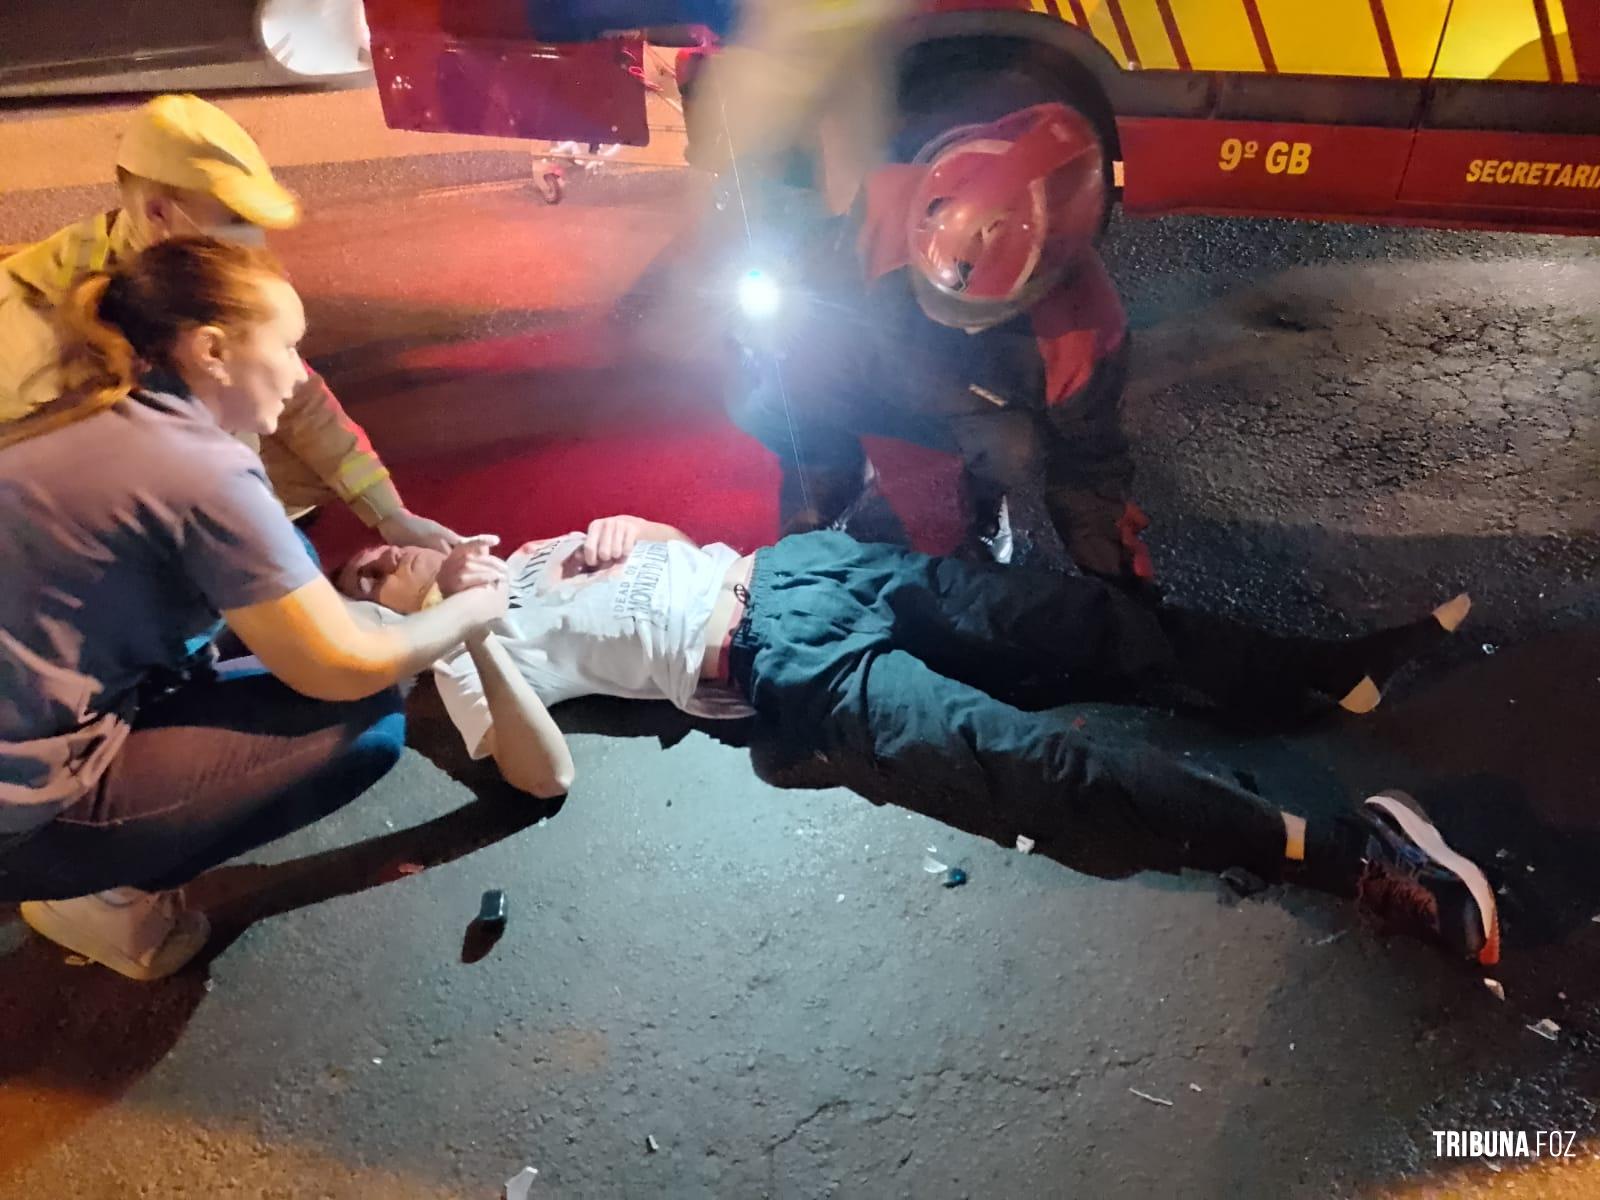 Siate socorre dois motociclistas após colisão frontal no Bairro Três Lagoas